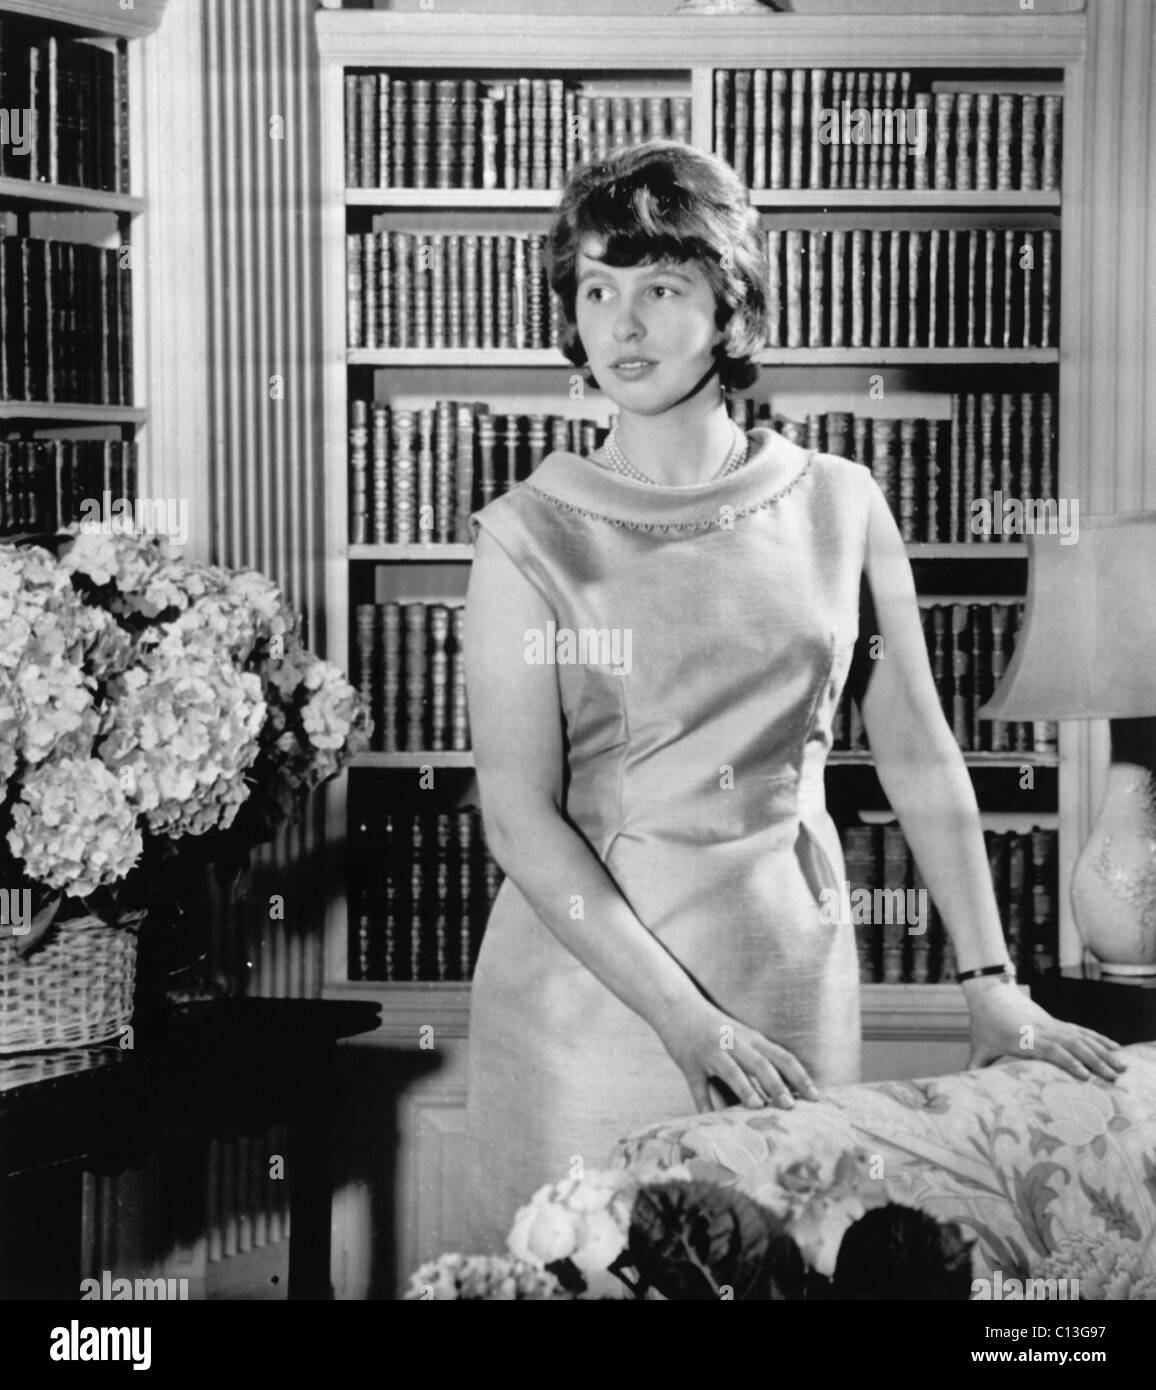 Princess Anne, la figlia della Regina Elisabetta II, sul suo sedicesimo compleanno, nella libreria a Buckingham Palace di Londra, agosto 15, 1966. Foto Stock